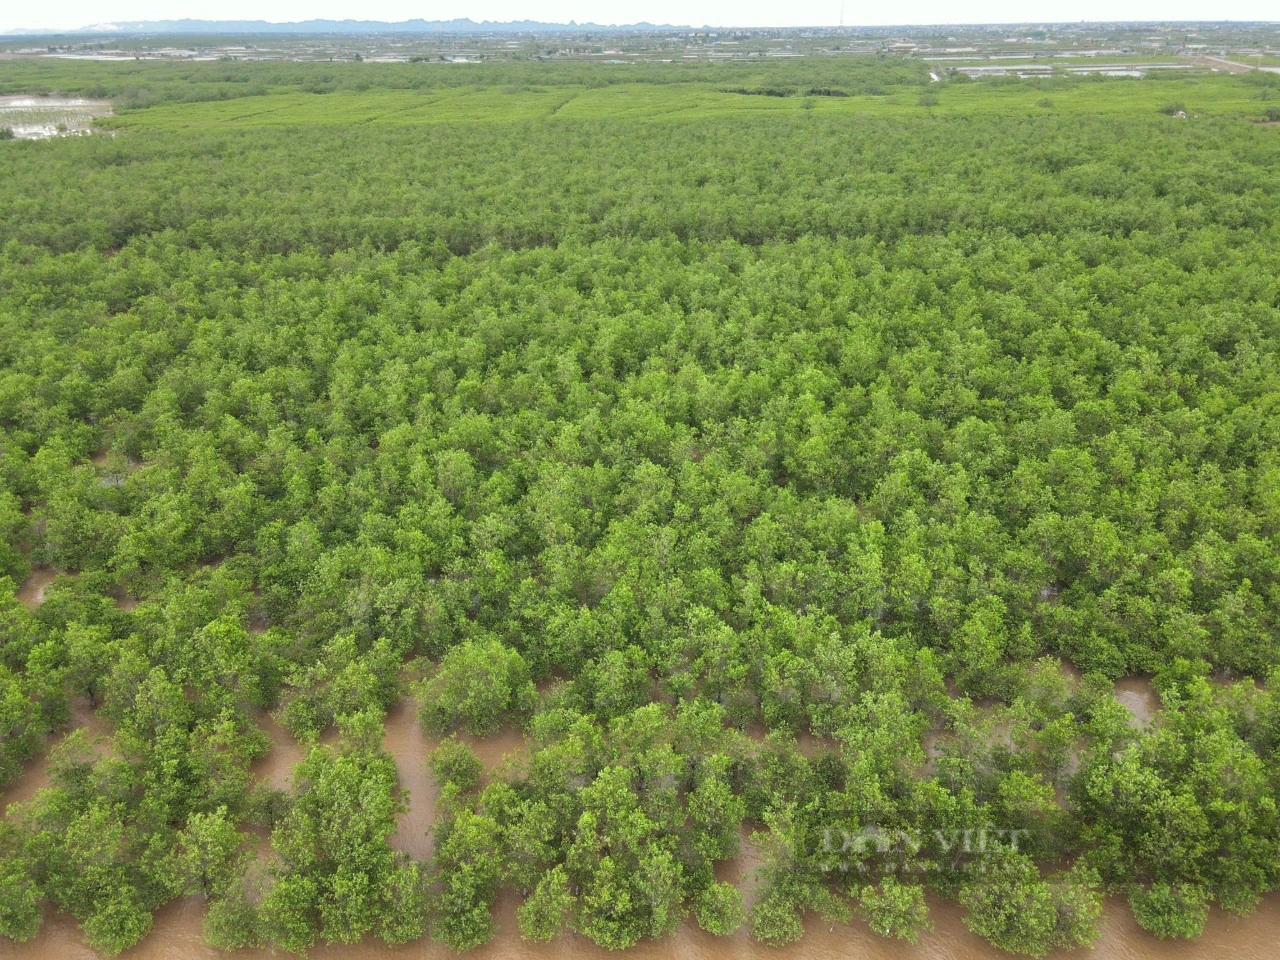 Đi tìm chữ “xanh” trong nông nghiệp: Trồng rừng hấp thụ carbon, thêm màu xanh, vừa thêm tiền tại Ninh Bình - Ảnh 8.